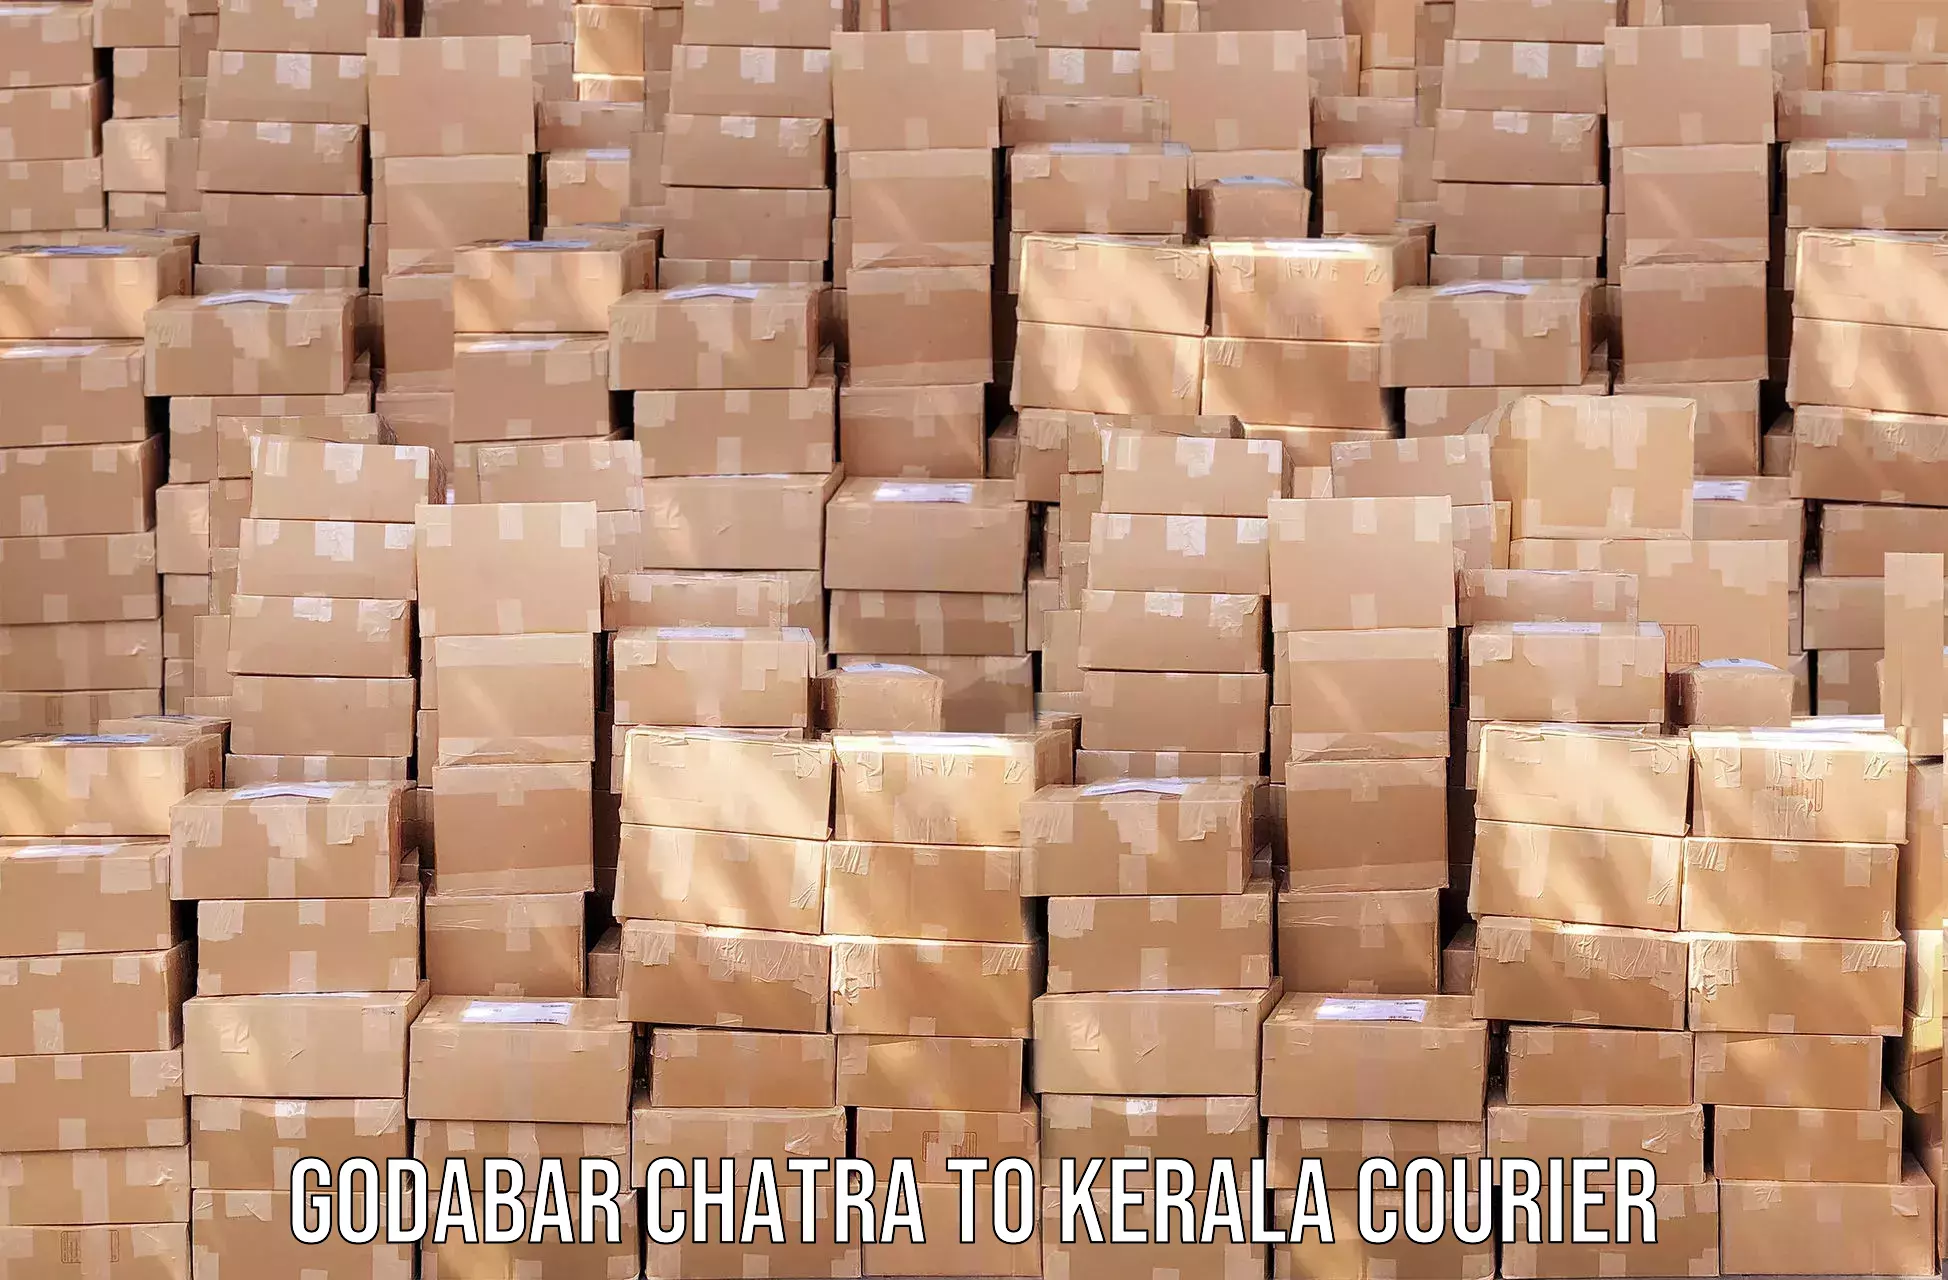 Courier services Godabar Chatra to Kumily